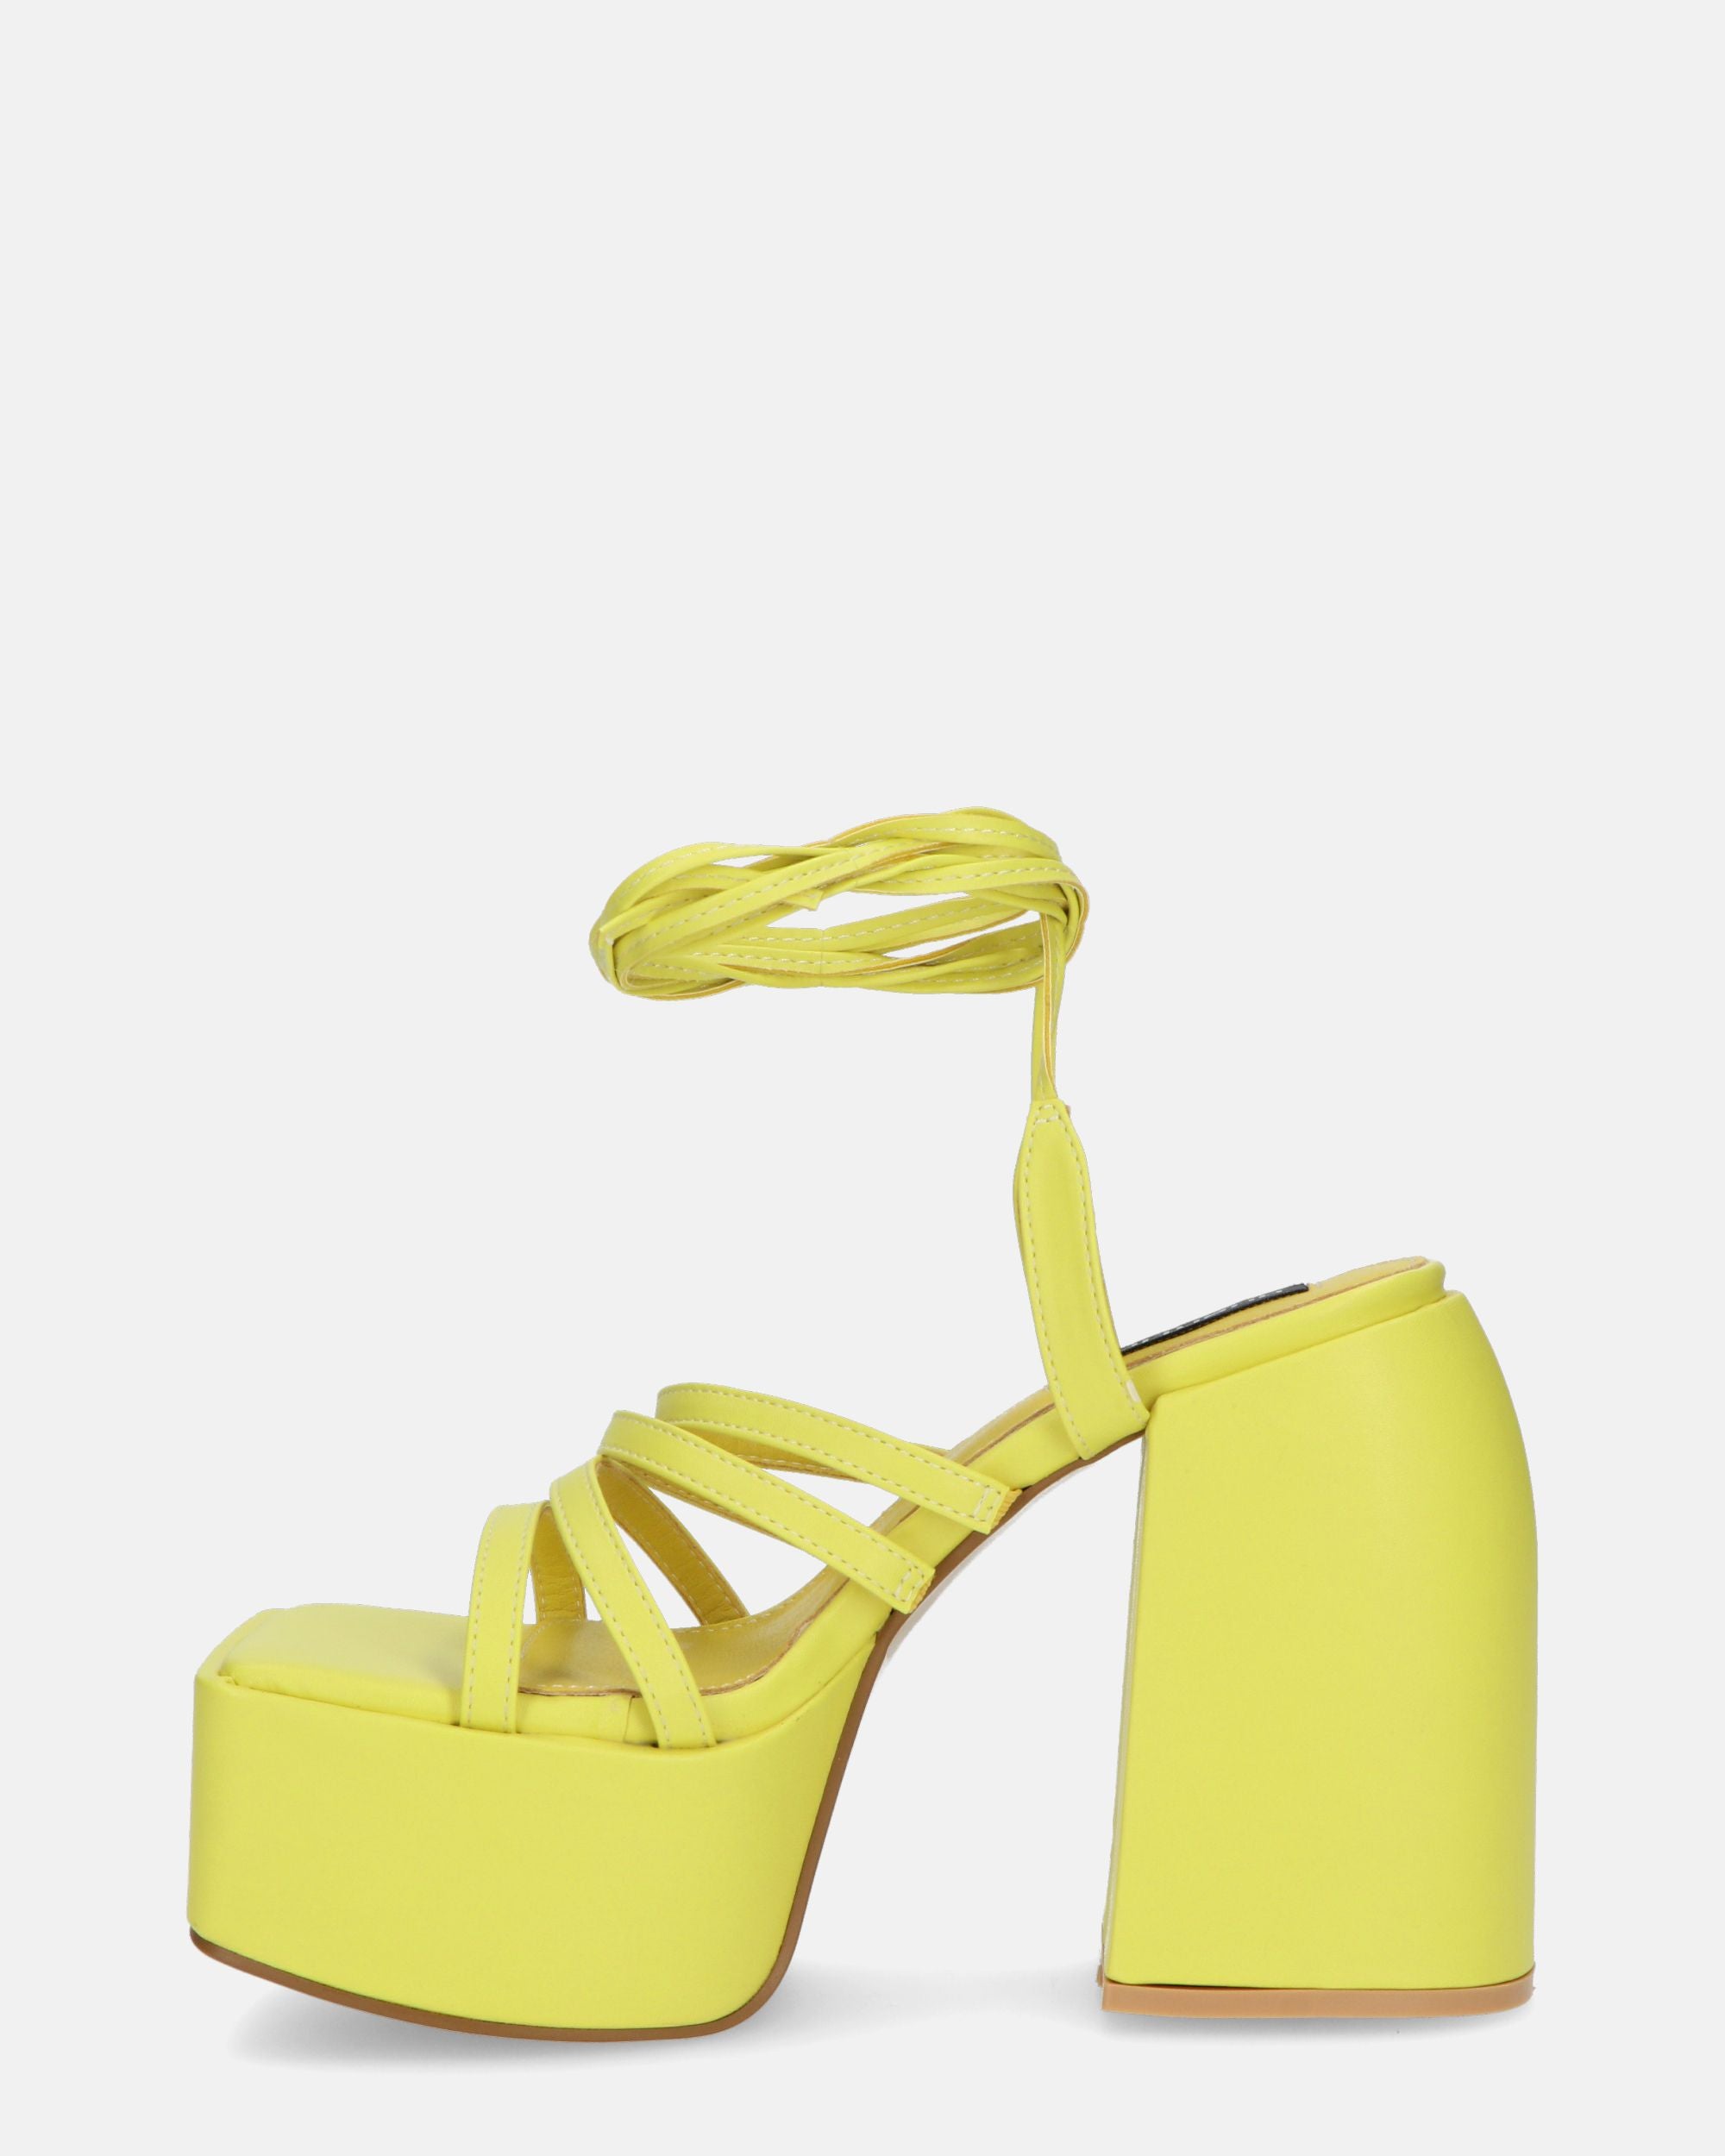 GILDA - sandali con tacco in ecopelle gialla con lacci